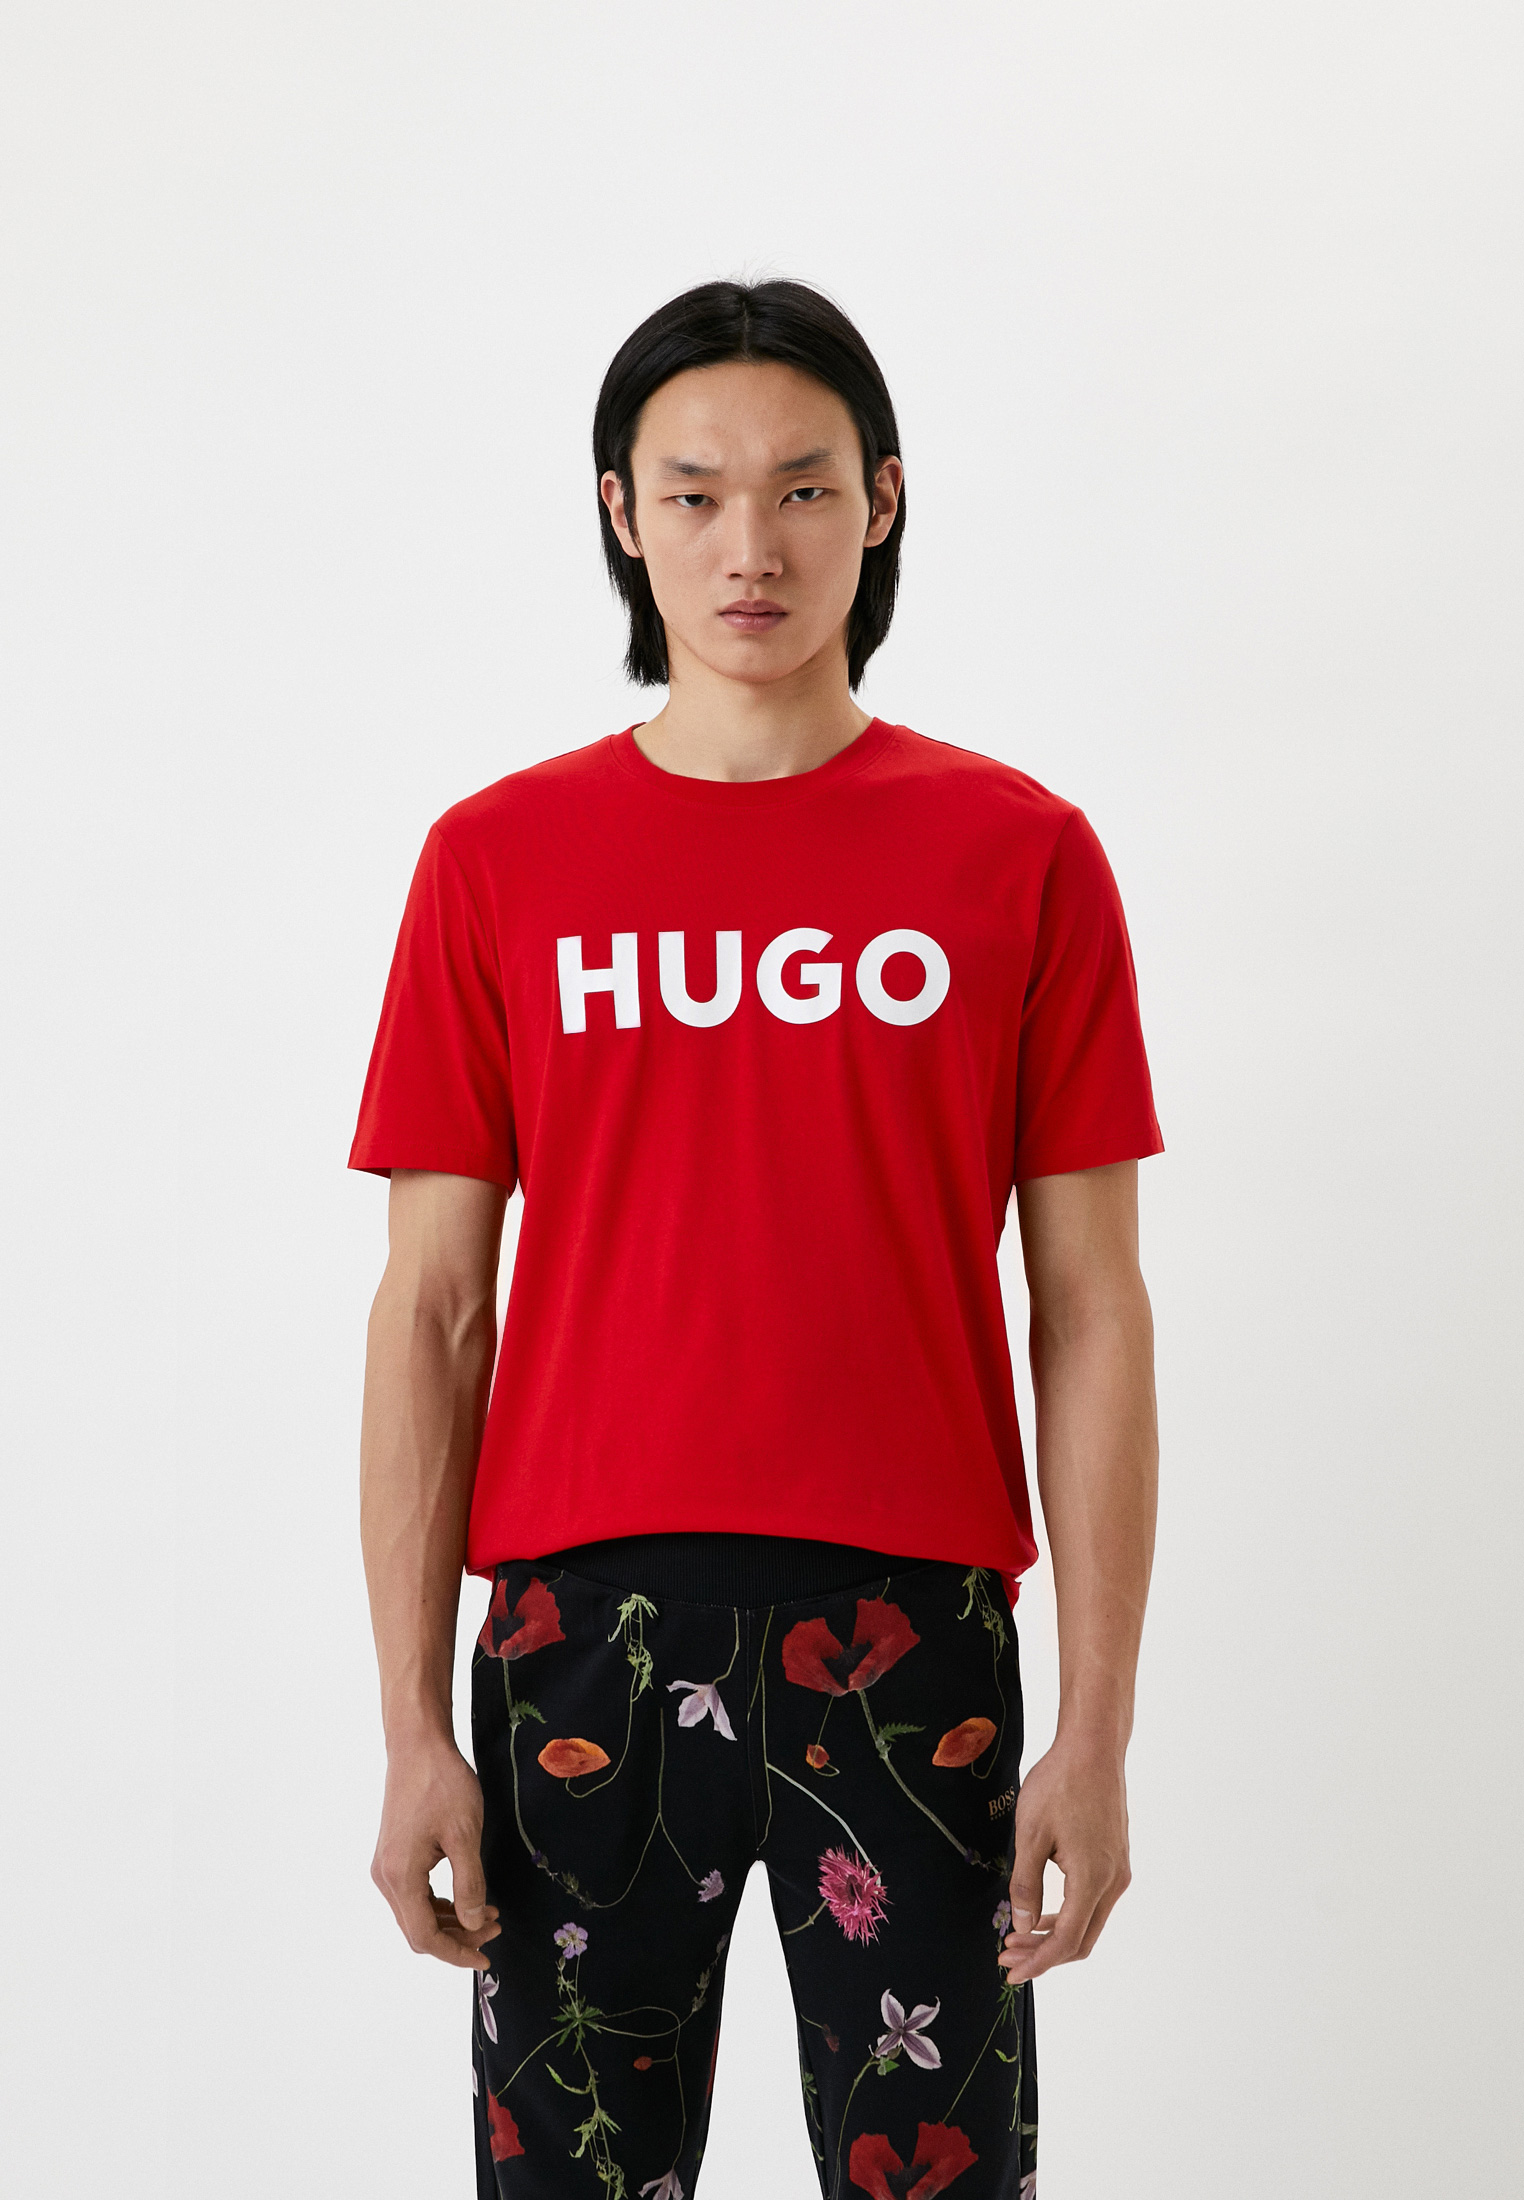 Купить футболку hugo. Футболка Hugo. Красная футболка Hugo. Hugo футболка мужская. Футболка Hugo с красным квадратом.